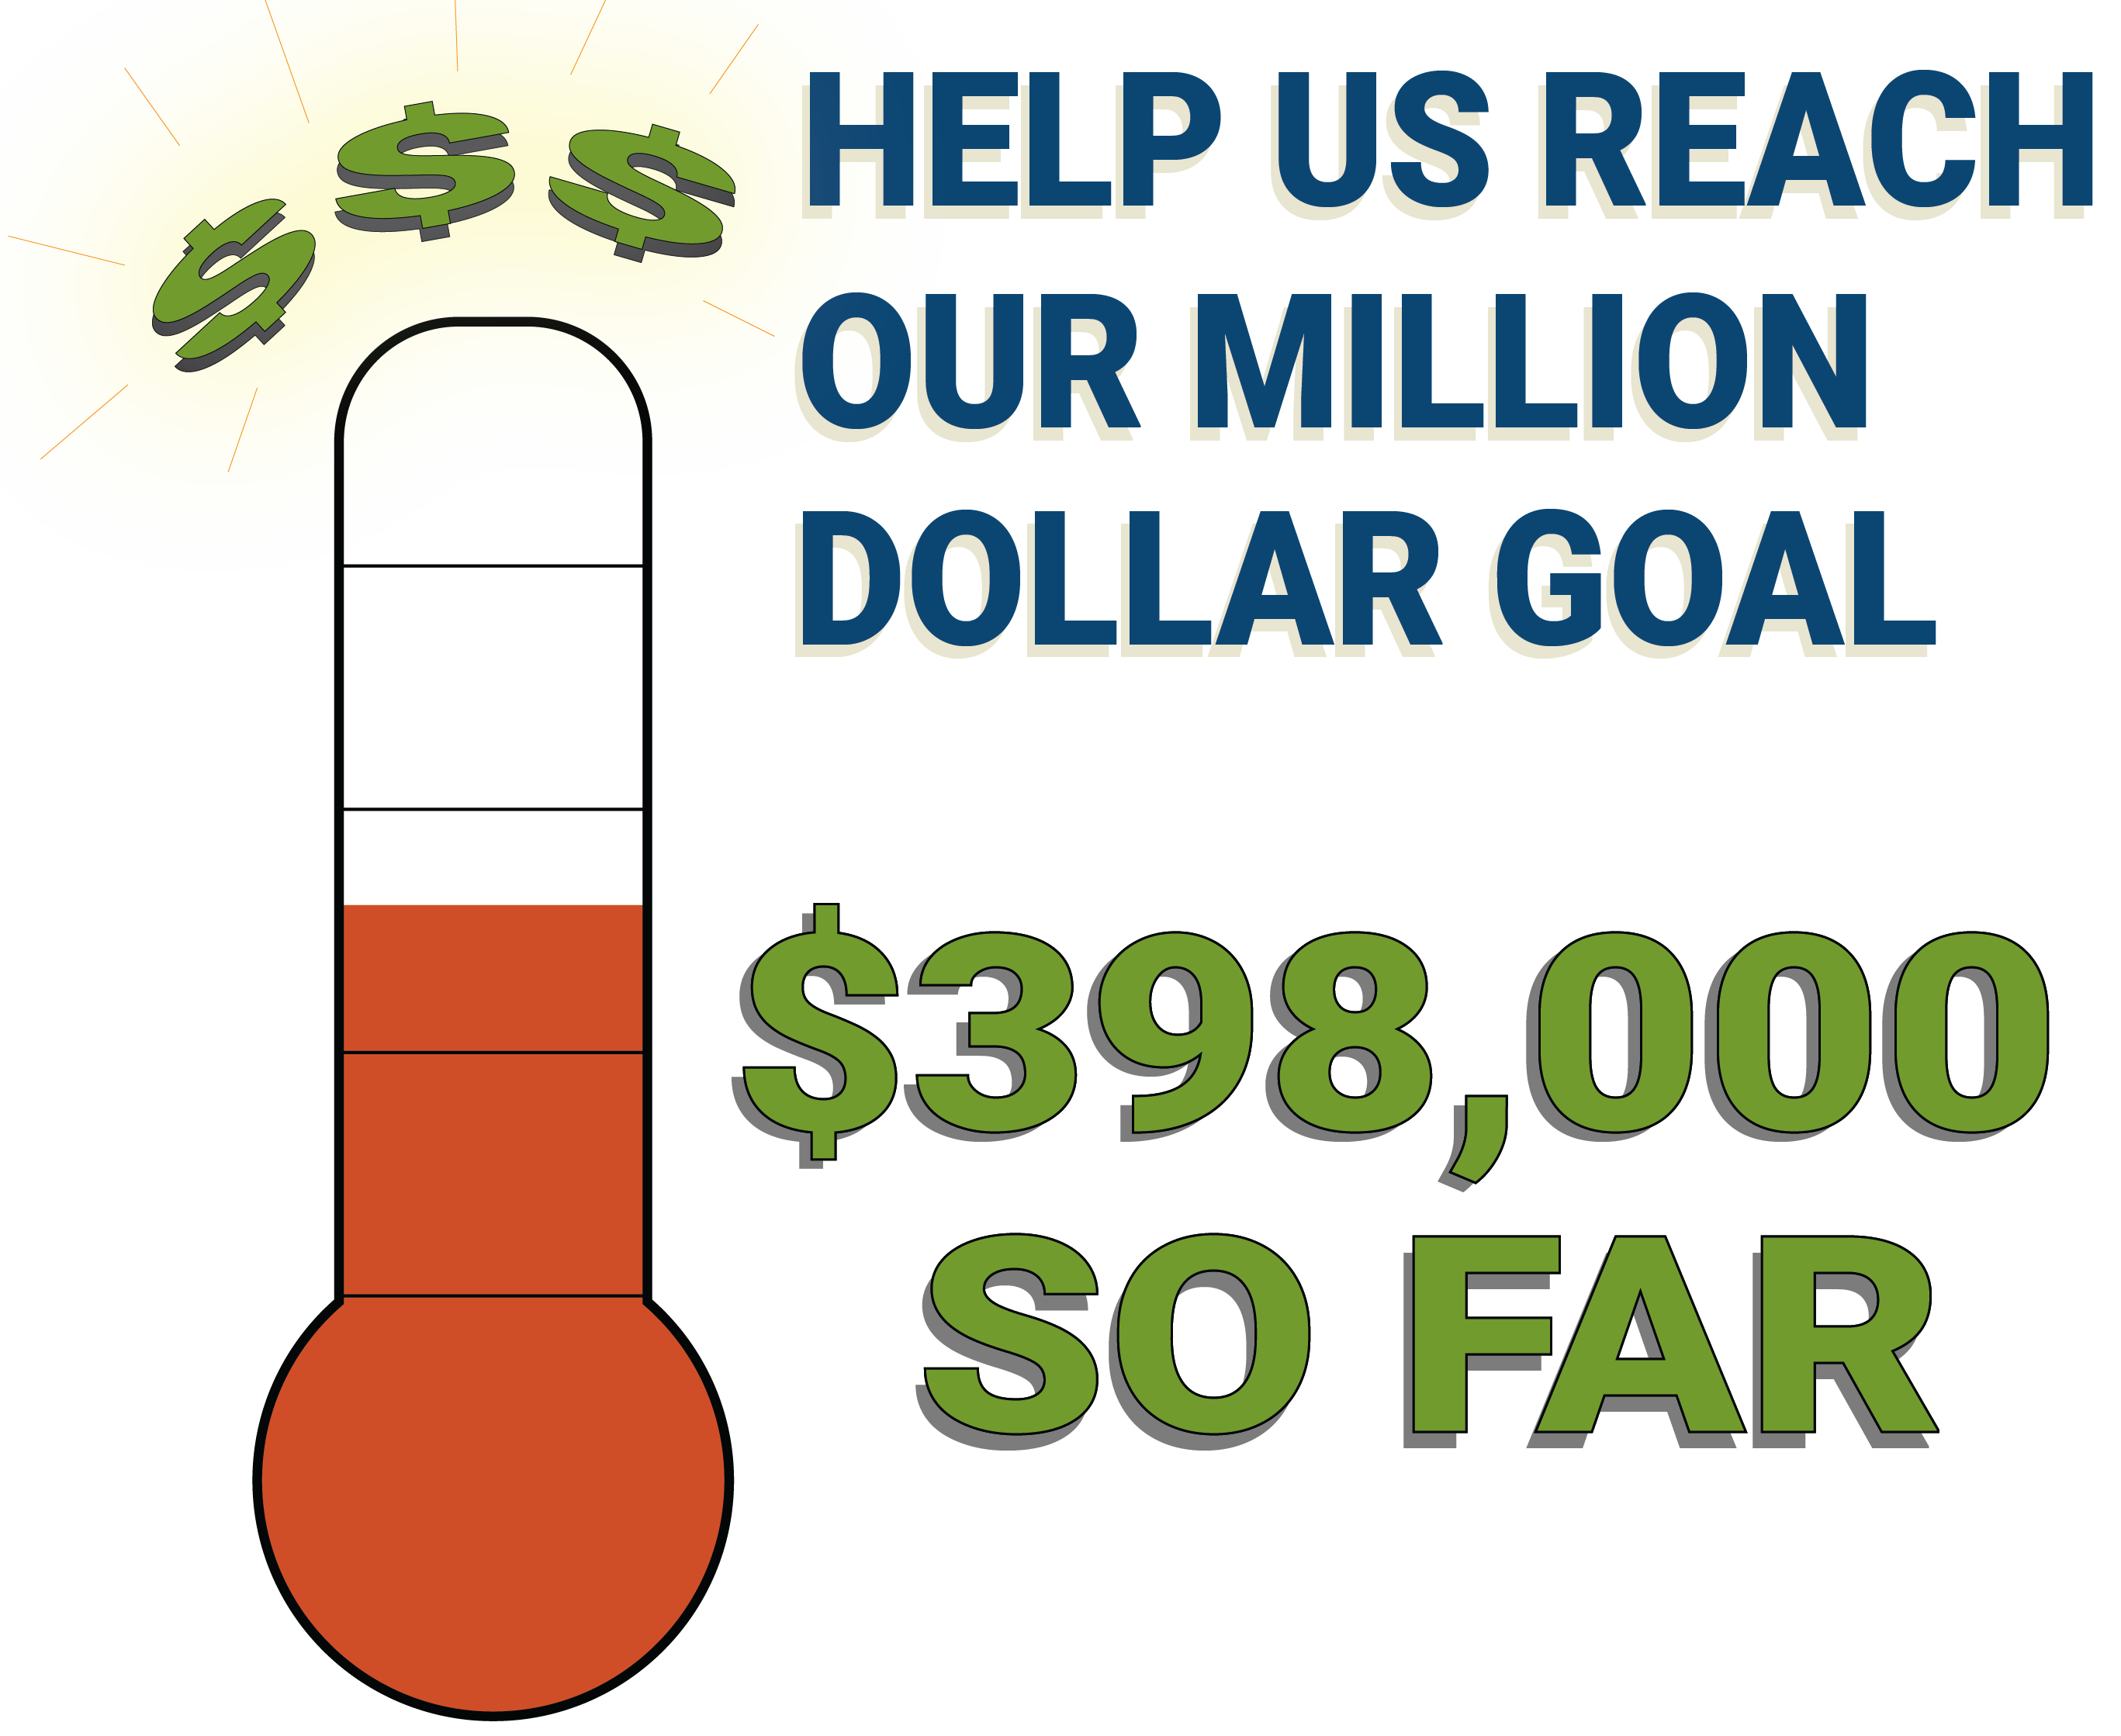 Help us reach our million dollar goal! $#98,000 so far!